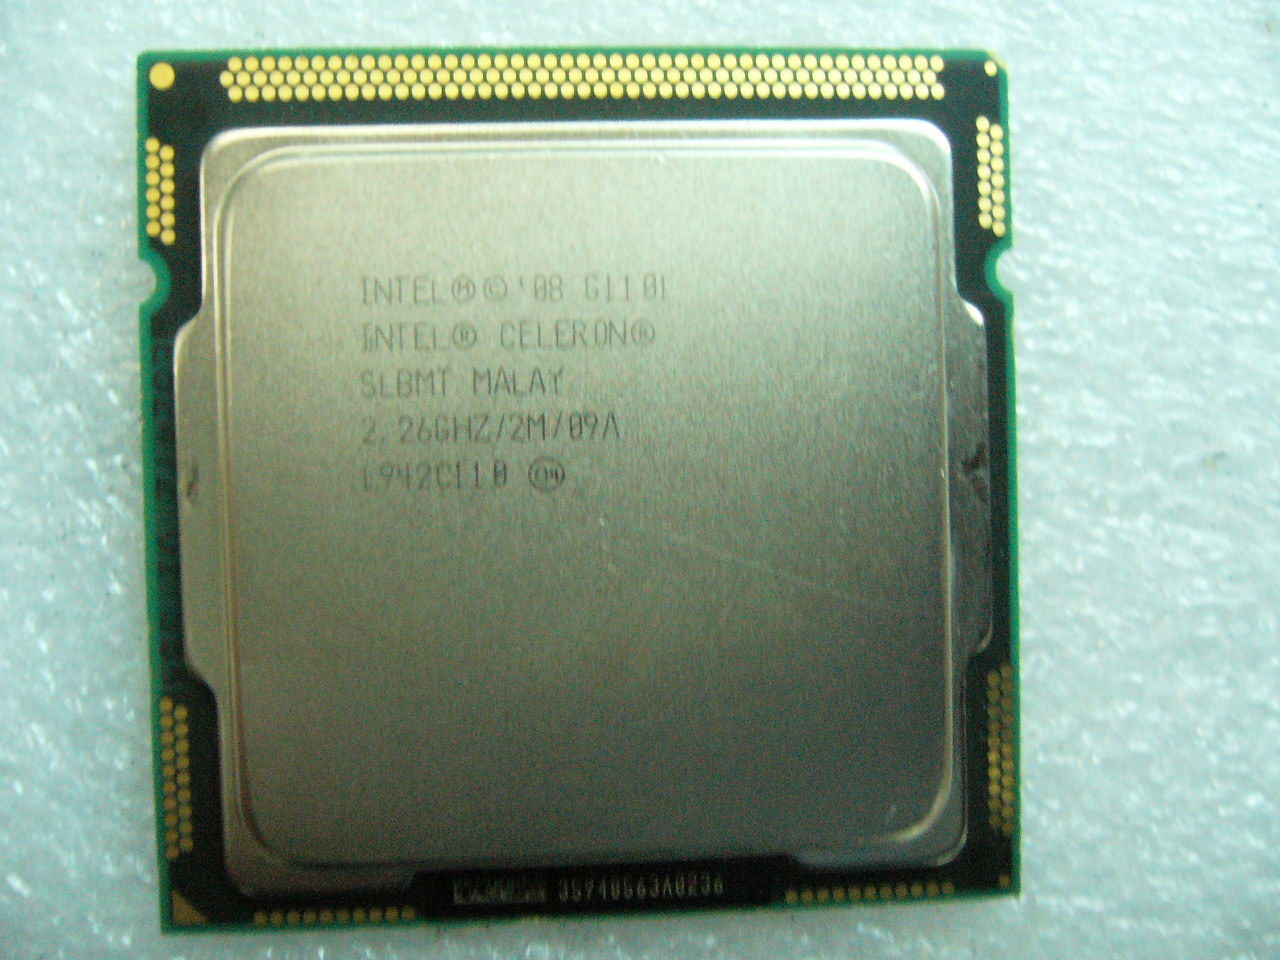 QTY 1x INTEL Celeron CPU G1101 2.26GHZ/2MB LGA1156 SLBMT - Click Image to Close